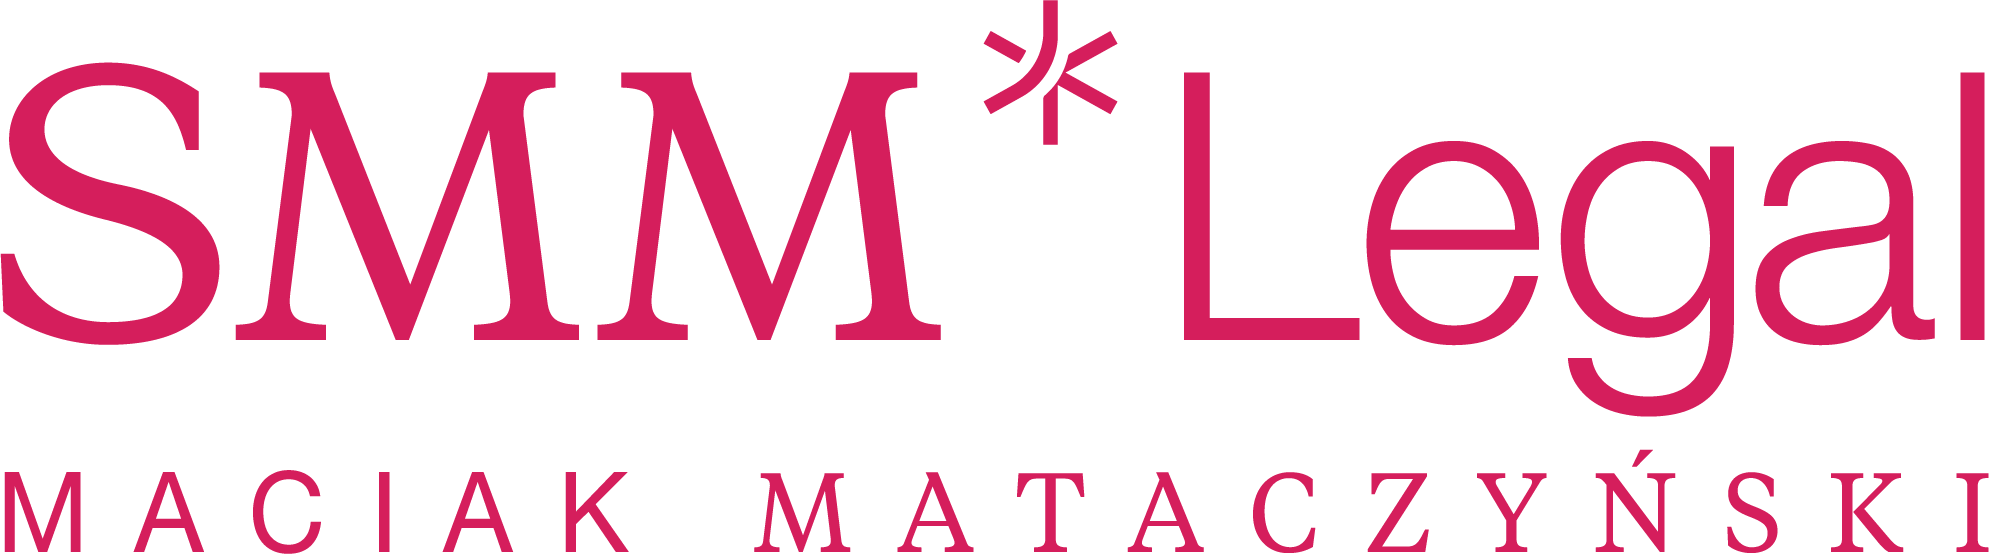 smm-legal-logo-kolor-rubin